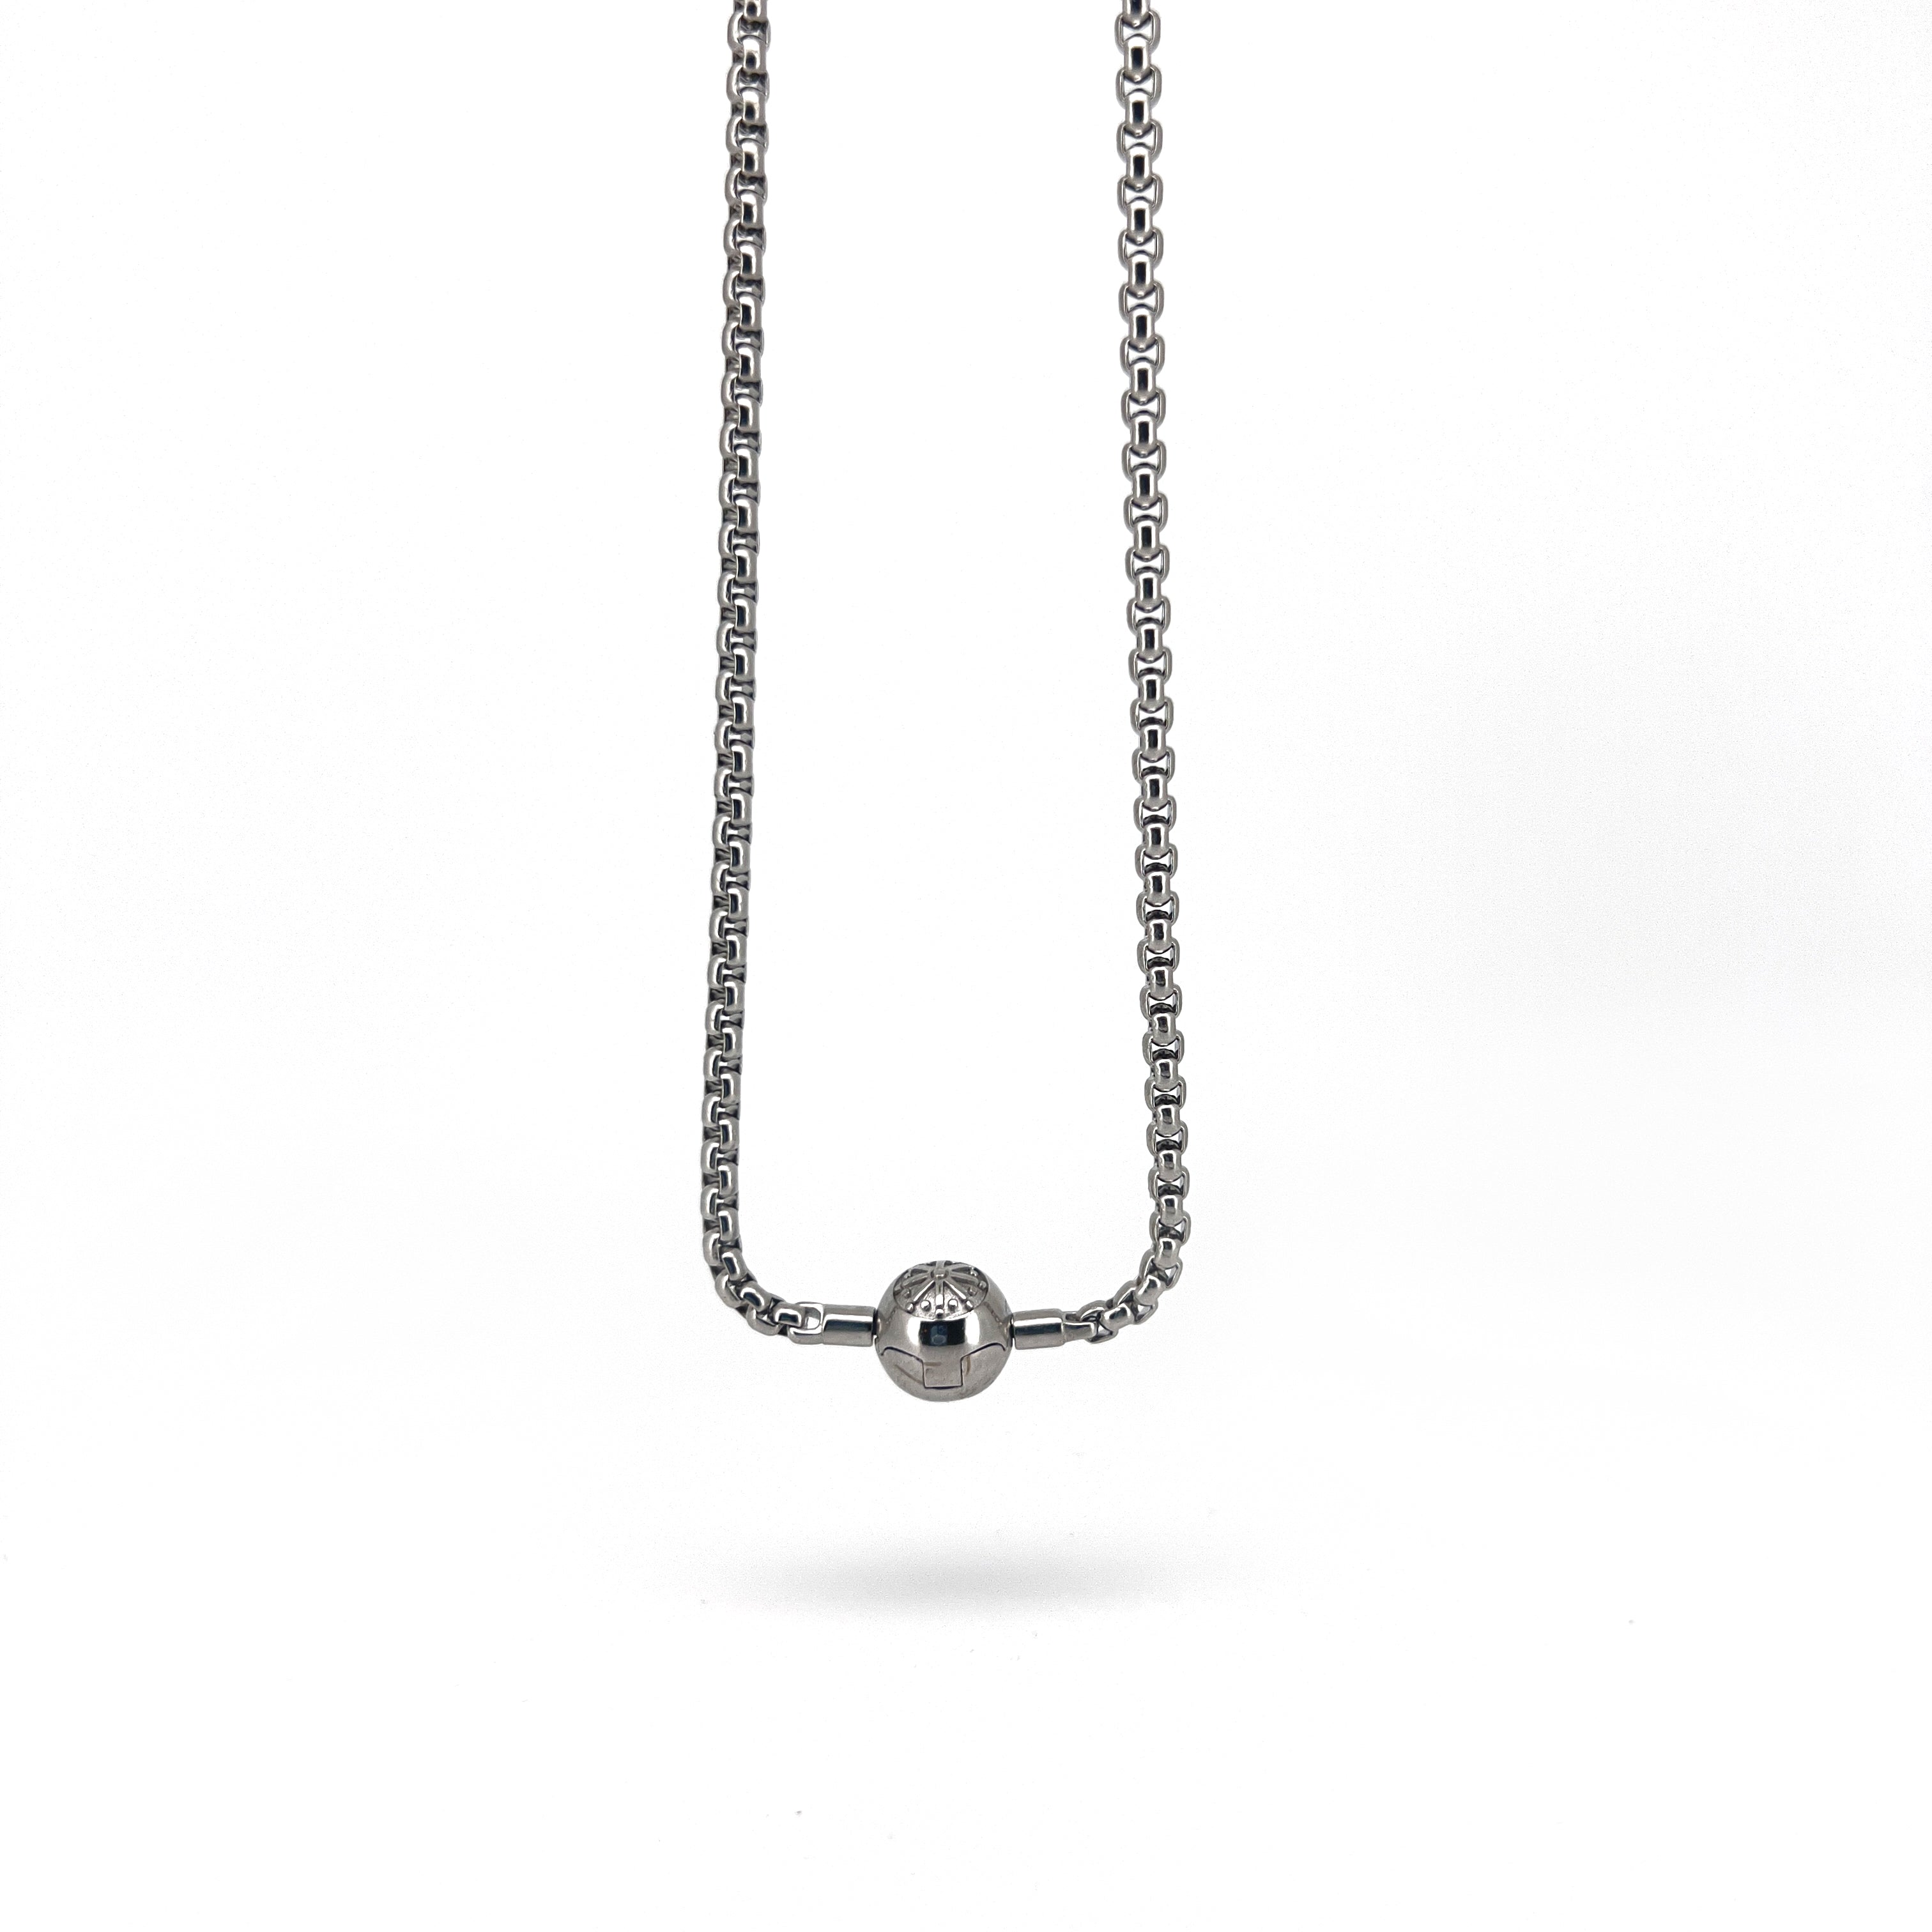 N061 colar básico de prata, nova corrente para joias da moda, estilo europeu, bijuteria rebelde, presente para homens e mulheres, amigo